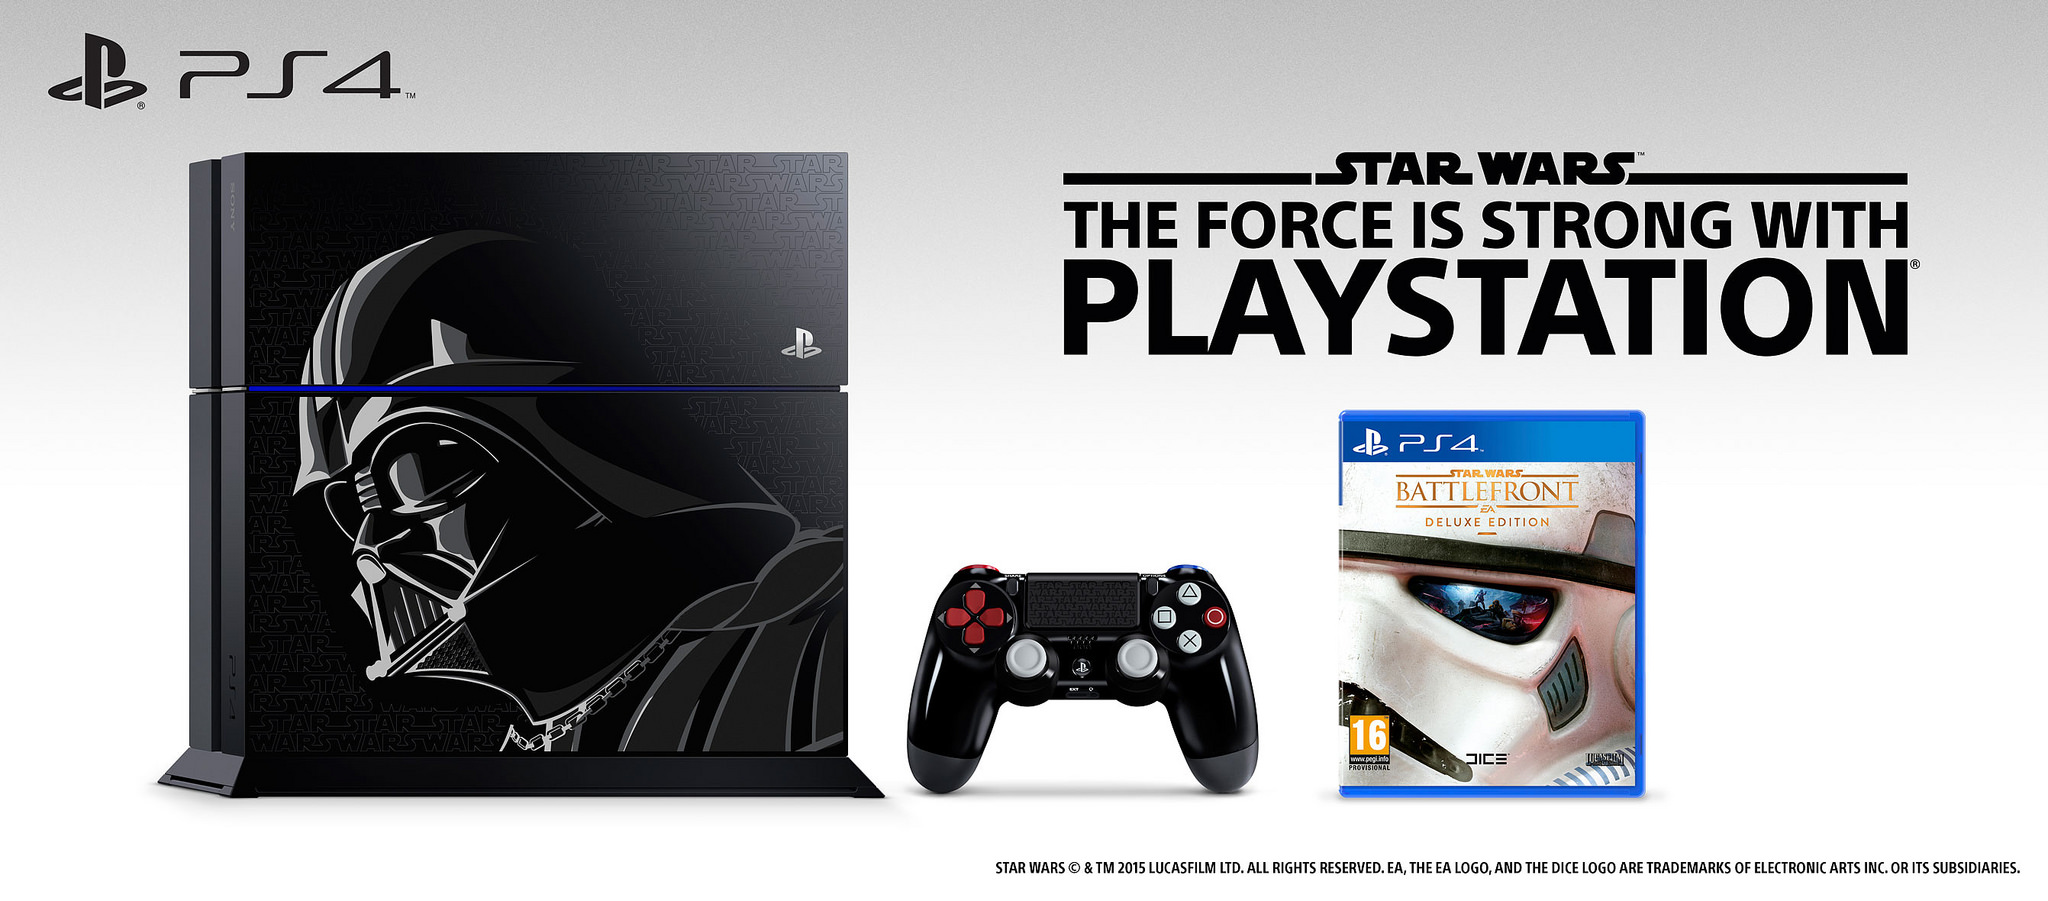 Star Wars Battlefront PS4 Limited Edition Bundle Deal